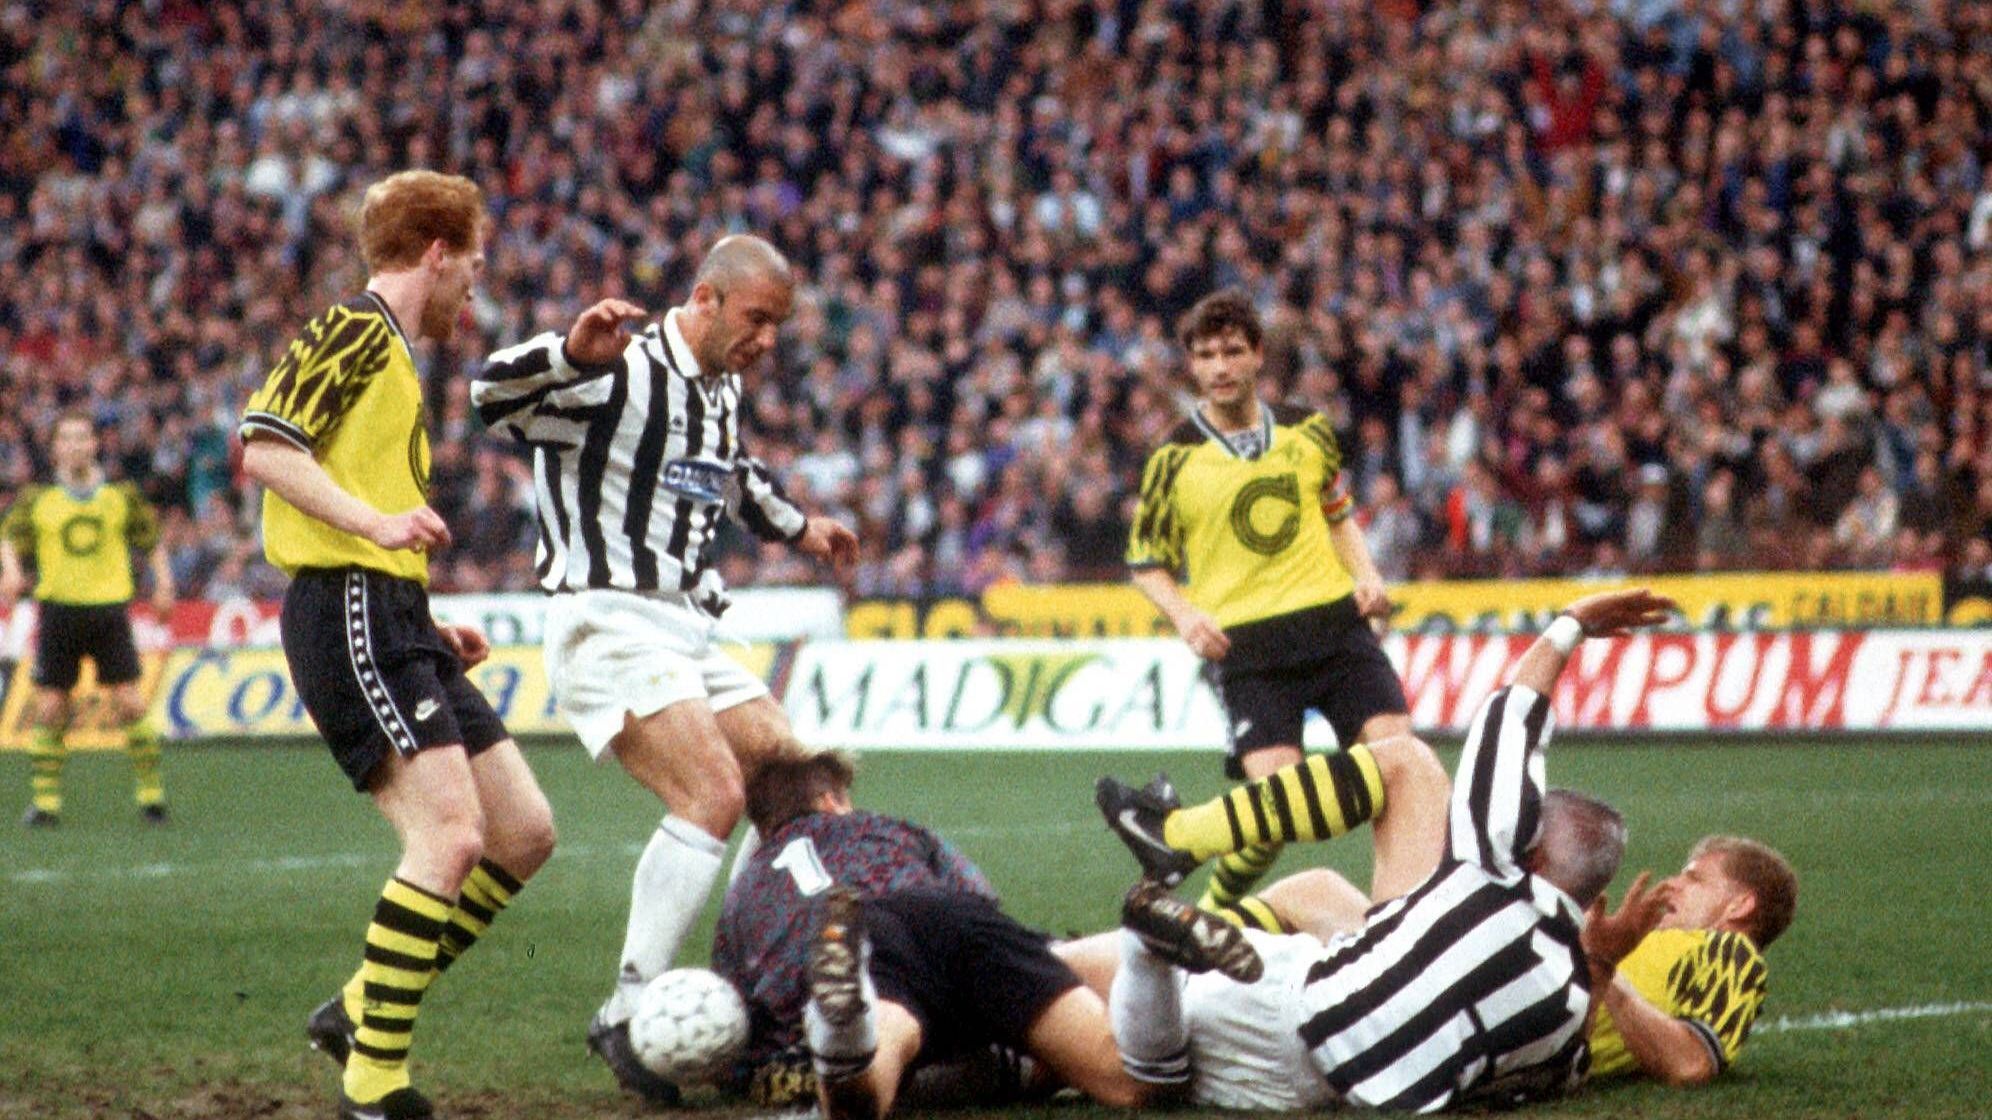 <strong>1994/95, UEFA-Cup, Juventus Turin</strong><br>Zorc, Riedle, Reuter, Sammer - eine große BVB-Mannschaft zeigt sich im "Vorspiel" auf 1997 und in der Revanche nach 1993. Beim 2:2 in Turin gleicht Jürgen Kohler für Juventus aus, er wird nach der Saison zum BVB wechseln und große Erfolge feiern. Das Rückspiel aber geht 1:2 verloren, entscheidend diesmal: Roberto Baggio.